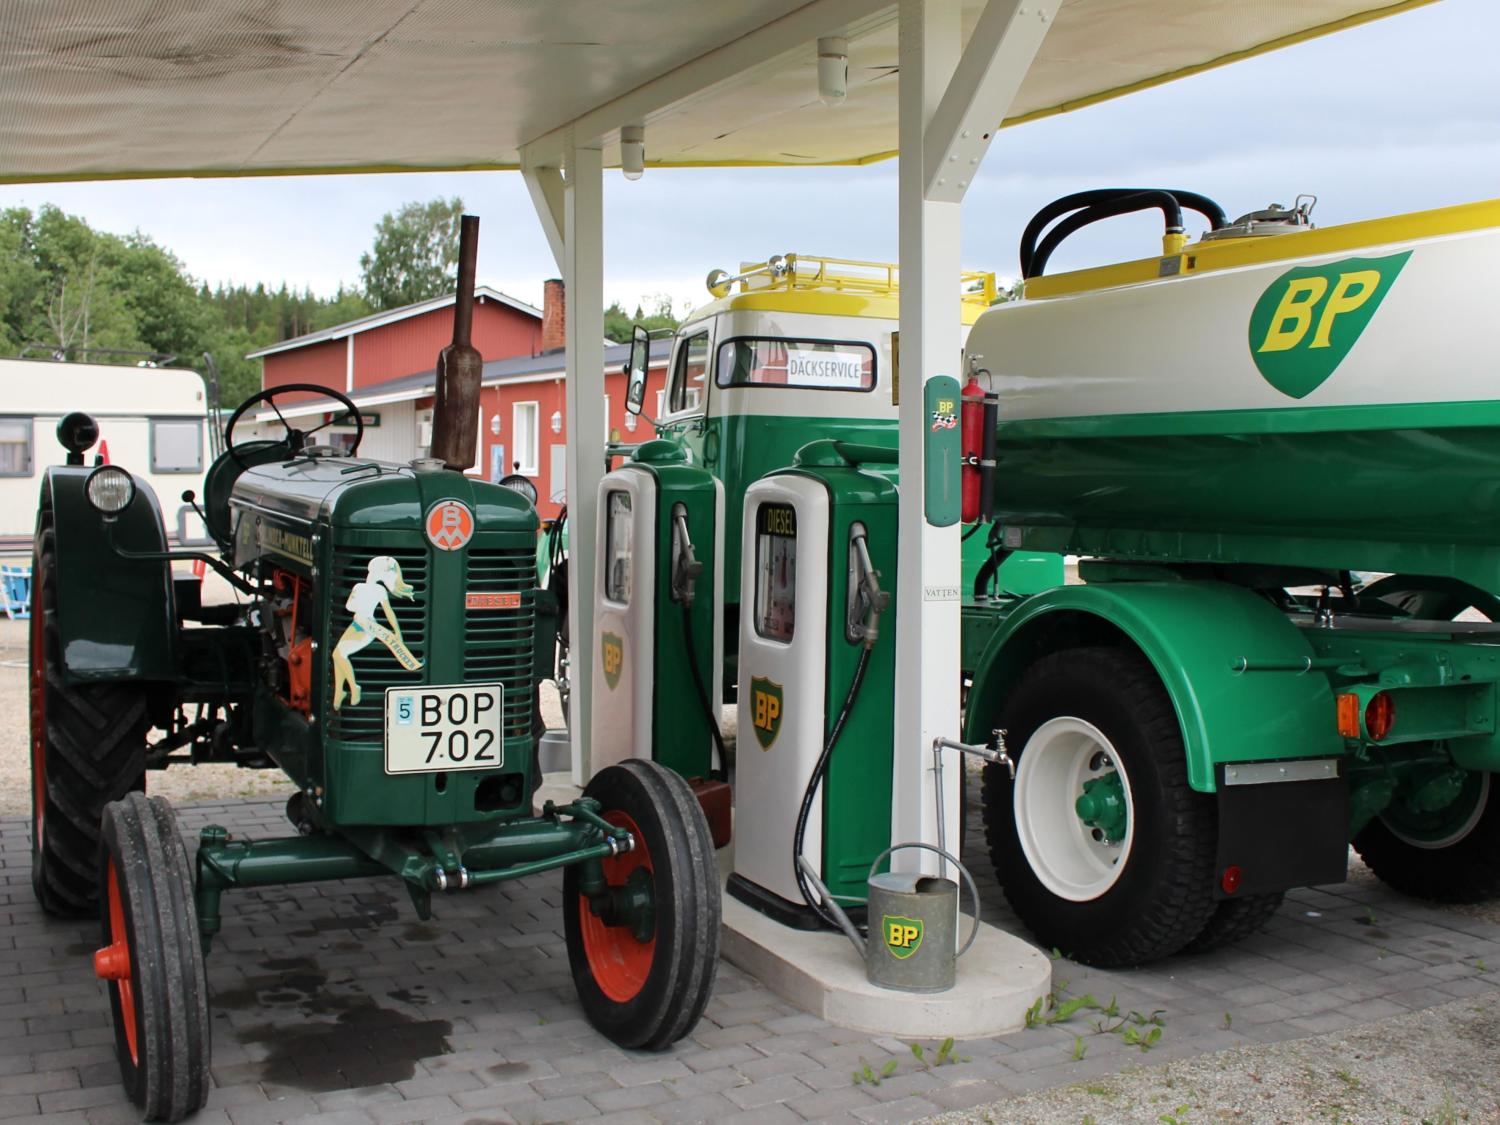 BP "Nostalgia-gas station" in Gällsta